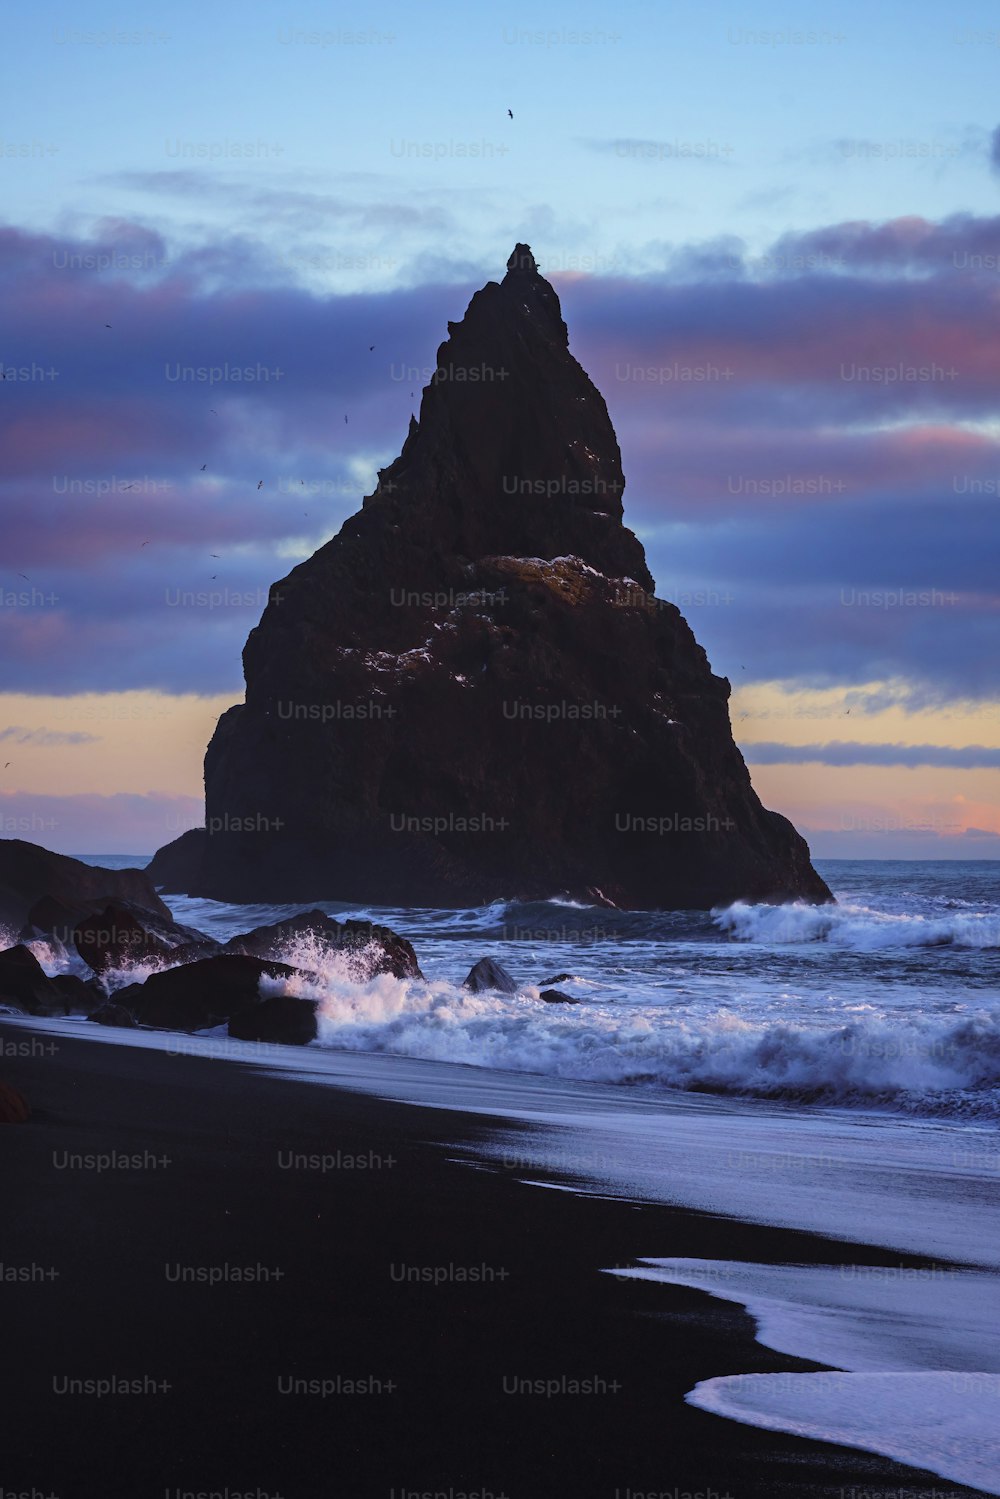 un gros rocher assis au sommet d’une plage au bord de l’océan